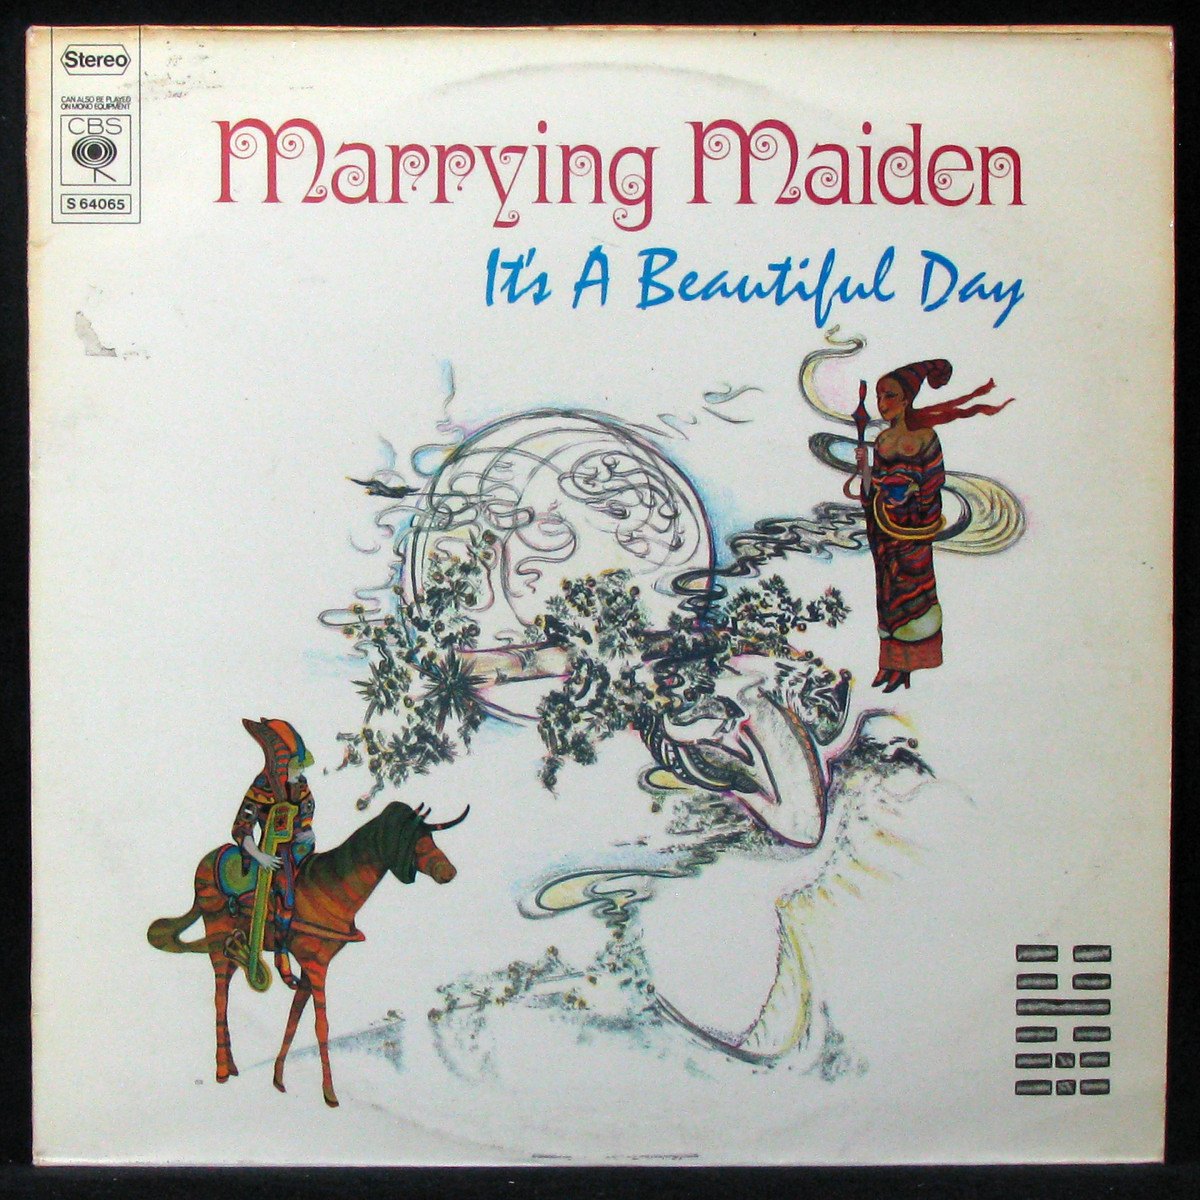 Песня it s a beautiful. It's a beautiful Day - marrying Maiden (1970). It’s a beautiful Day — marrying Maiden картинки. Its a beautiful Day песня.